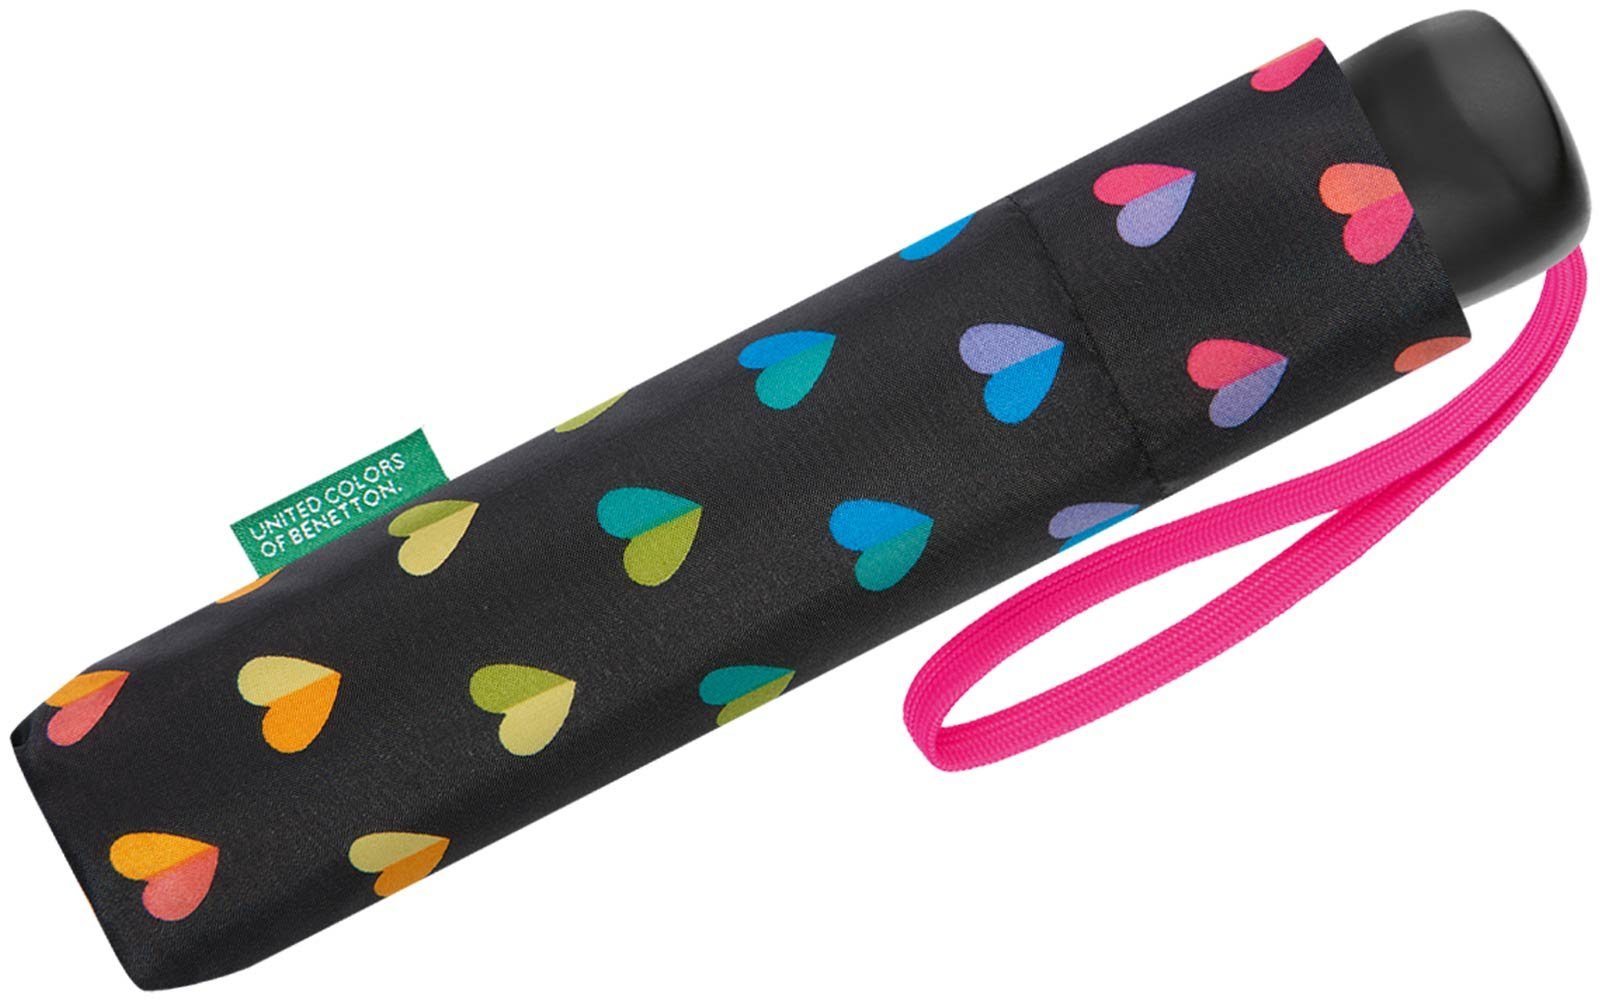 manueller Benetton United Langregenschirm mit Taschenschirm Handöffner, stabiler, regenbogen-farbigem mit Colors of Herzen-Muster